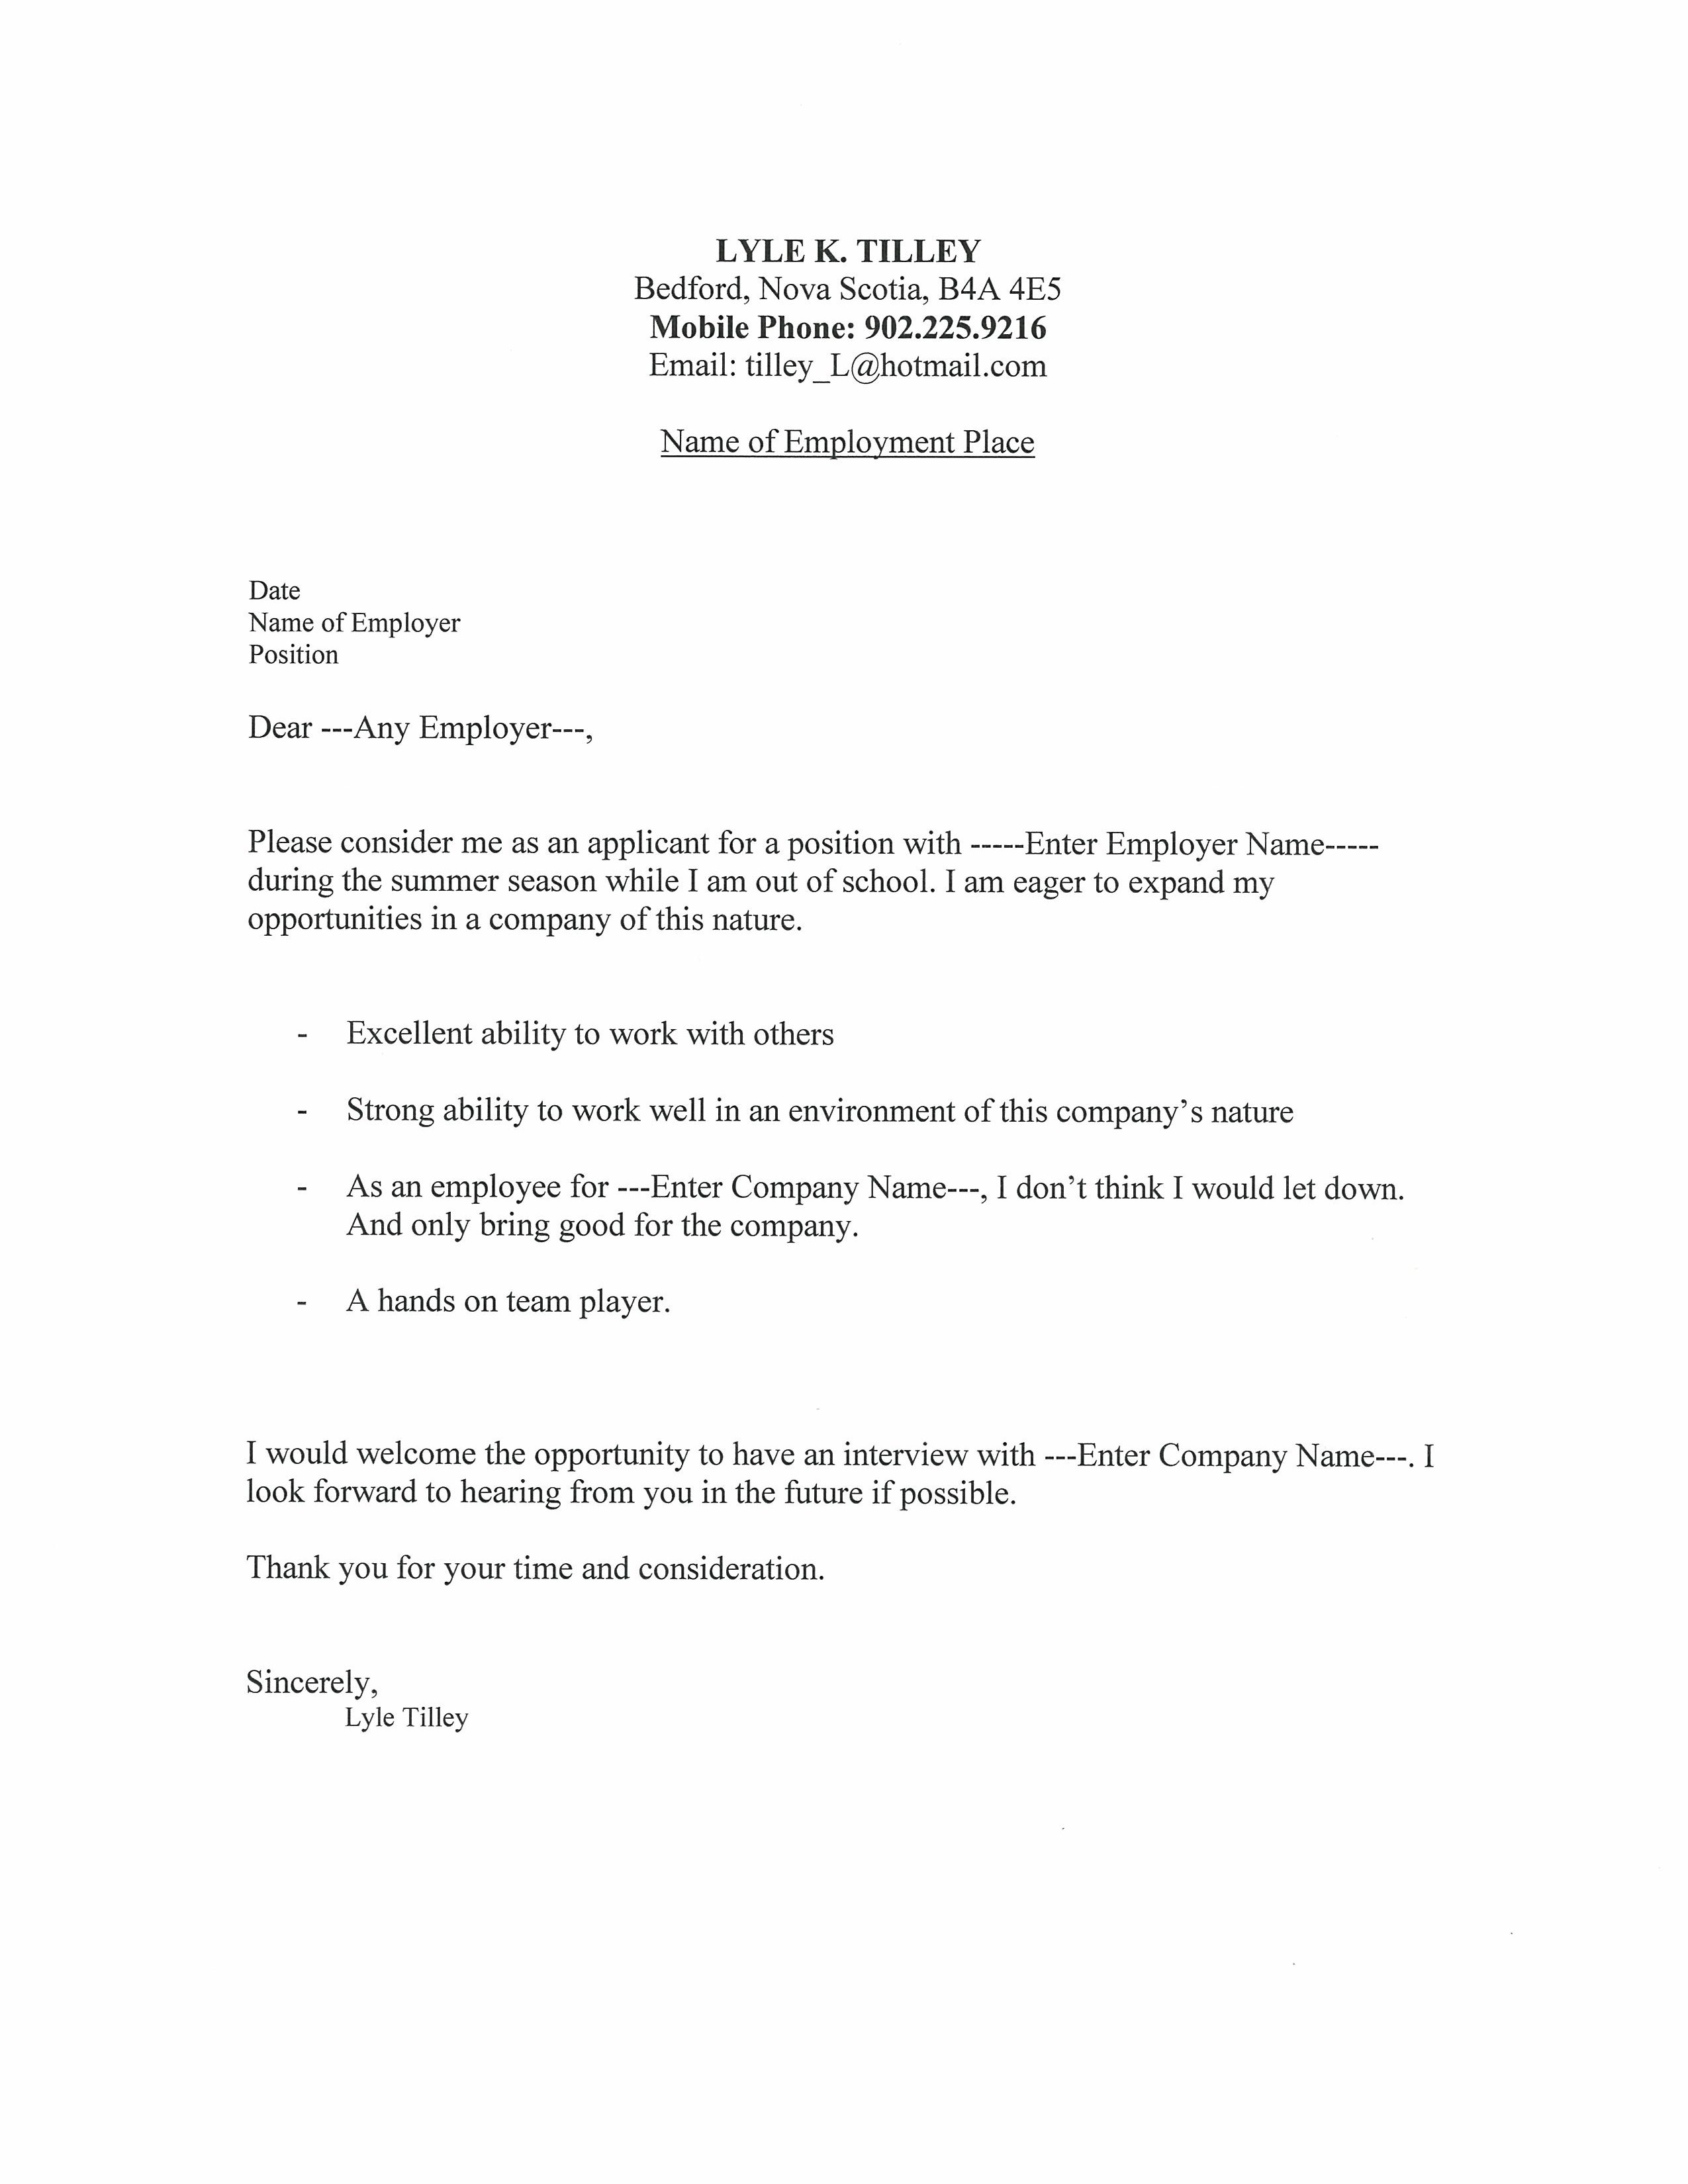 letter resume cover letter